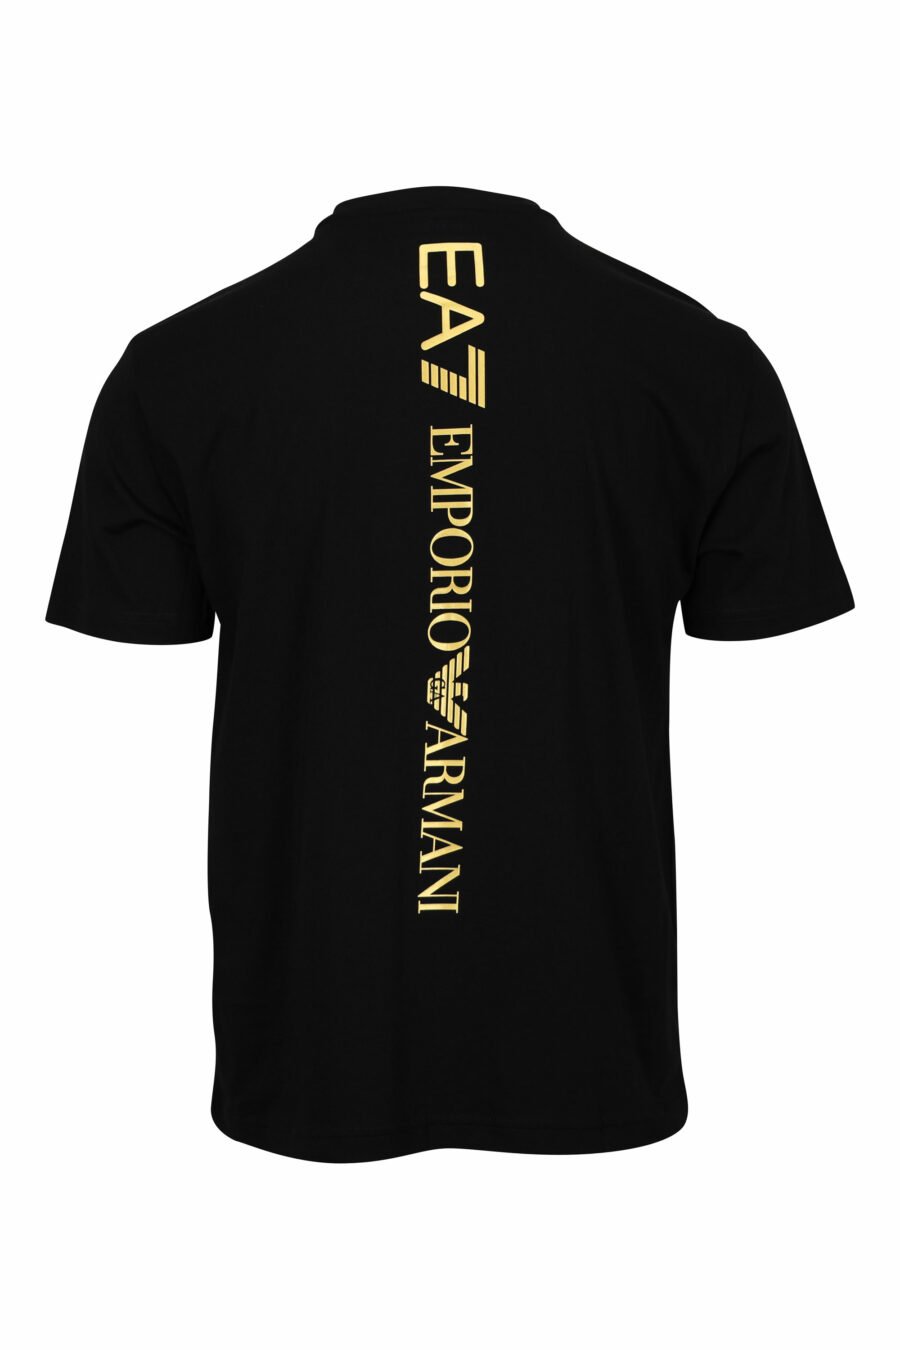 Camiseta negra con maxilogo "lux identity" dorado vertical detrás - 8057970715047 1